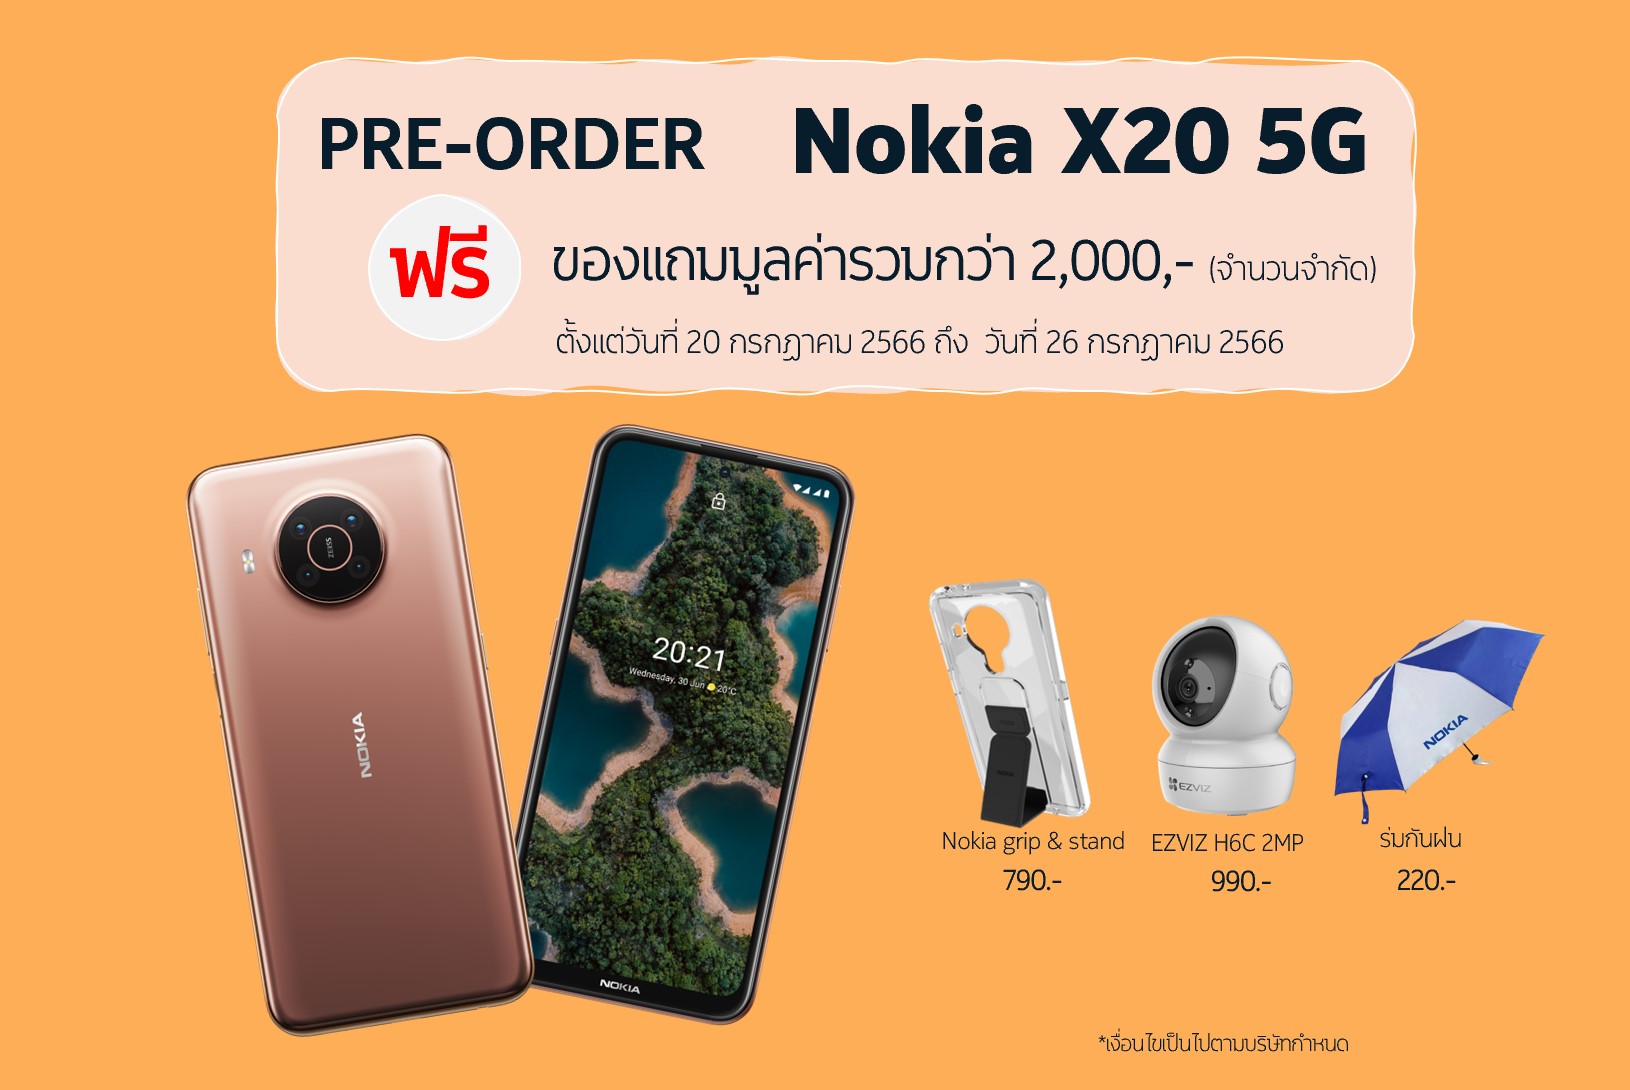 พรีออเดอร์ Nokia X20 5G ราคาเพียง 6,990 บาท จัดเต็มของแถมฟรีมูลค่ากว่า 2,000 บาท เริ่ม 20 กรกฎาคมนี้